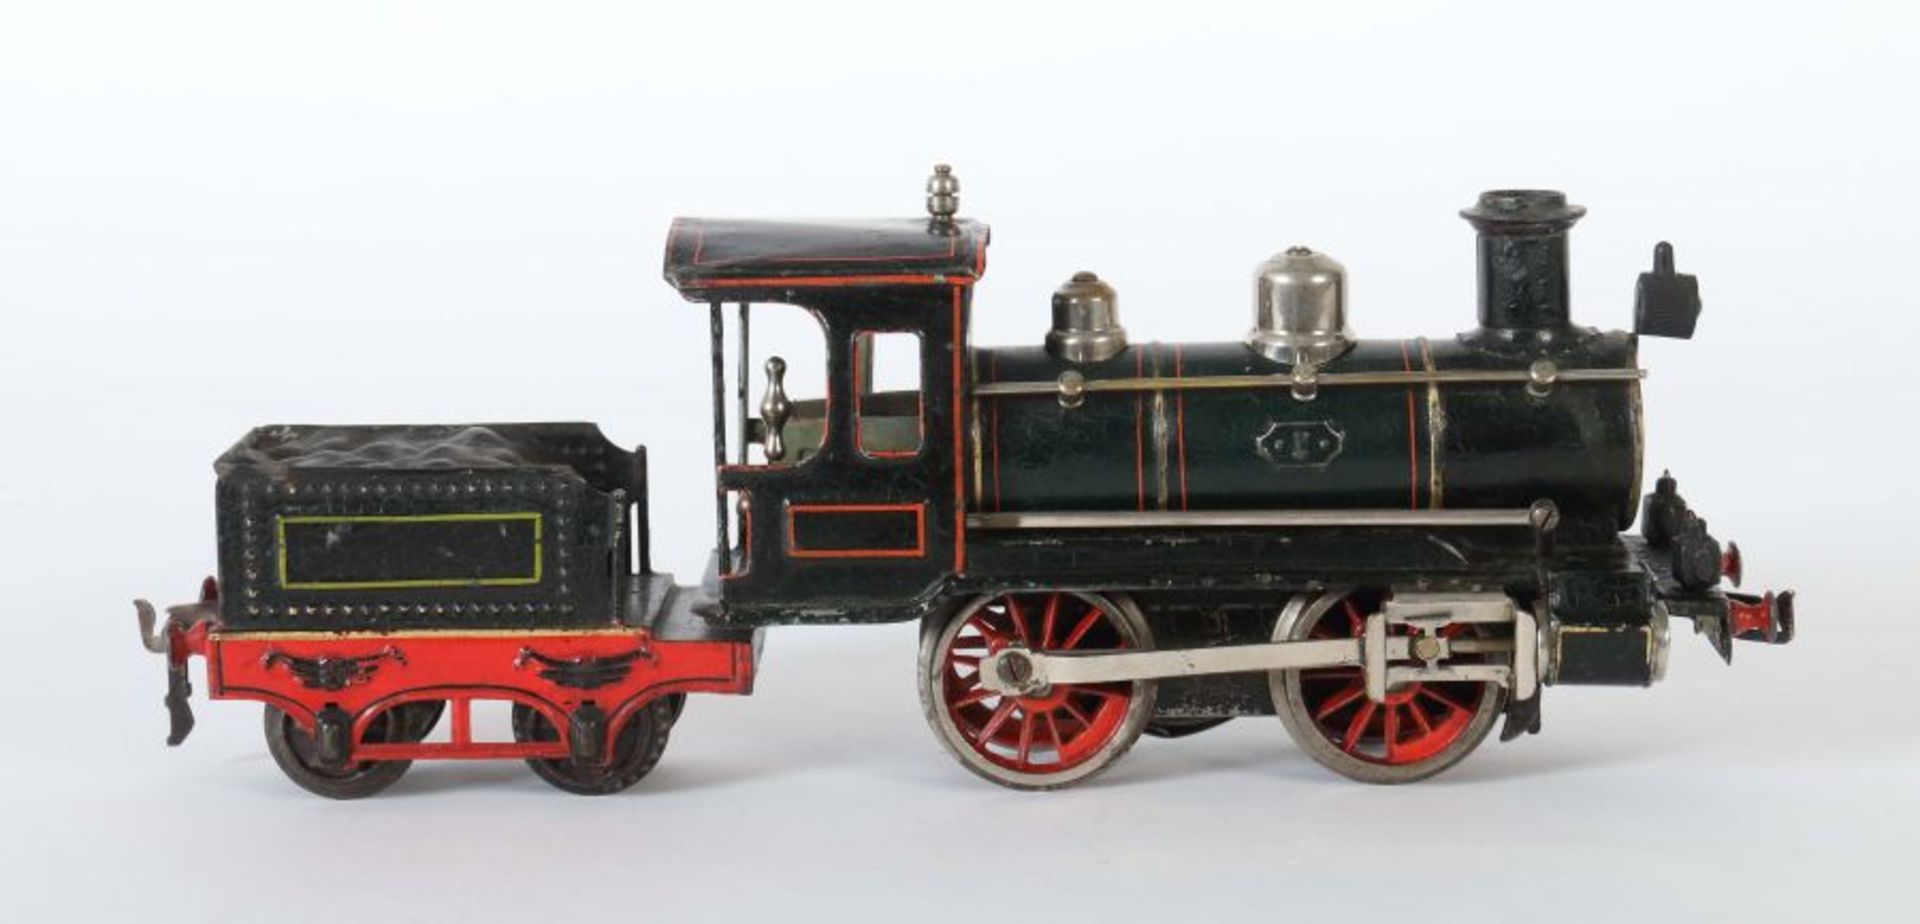 Dampflok Märklin, R 1021, Spur 1, BZ 1906-1915, schwarz/grün HL, Uhrwerkantrieb, Bremse, v+r, - Bild 2 aus 2